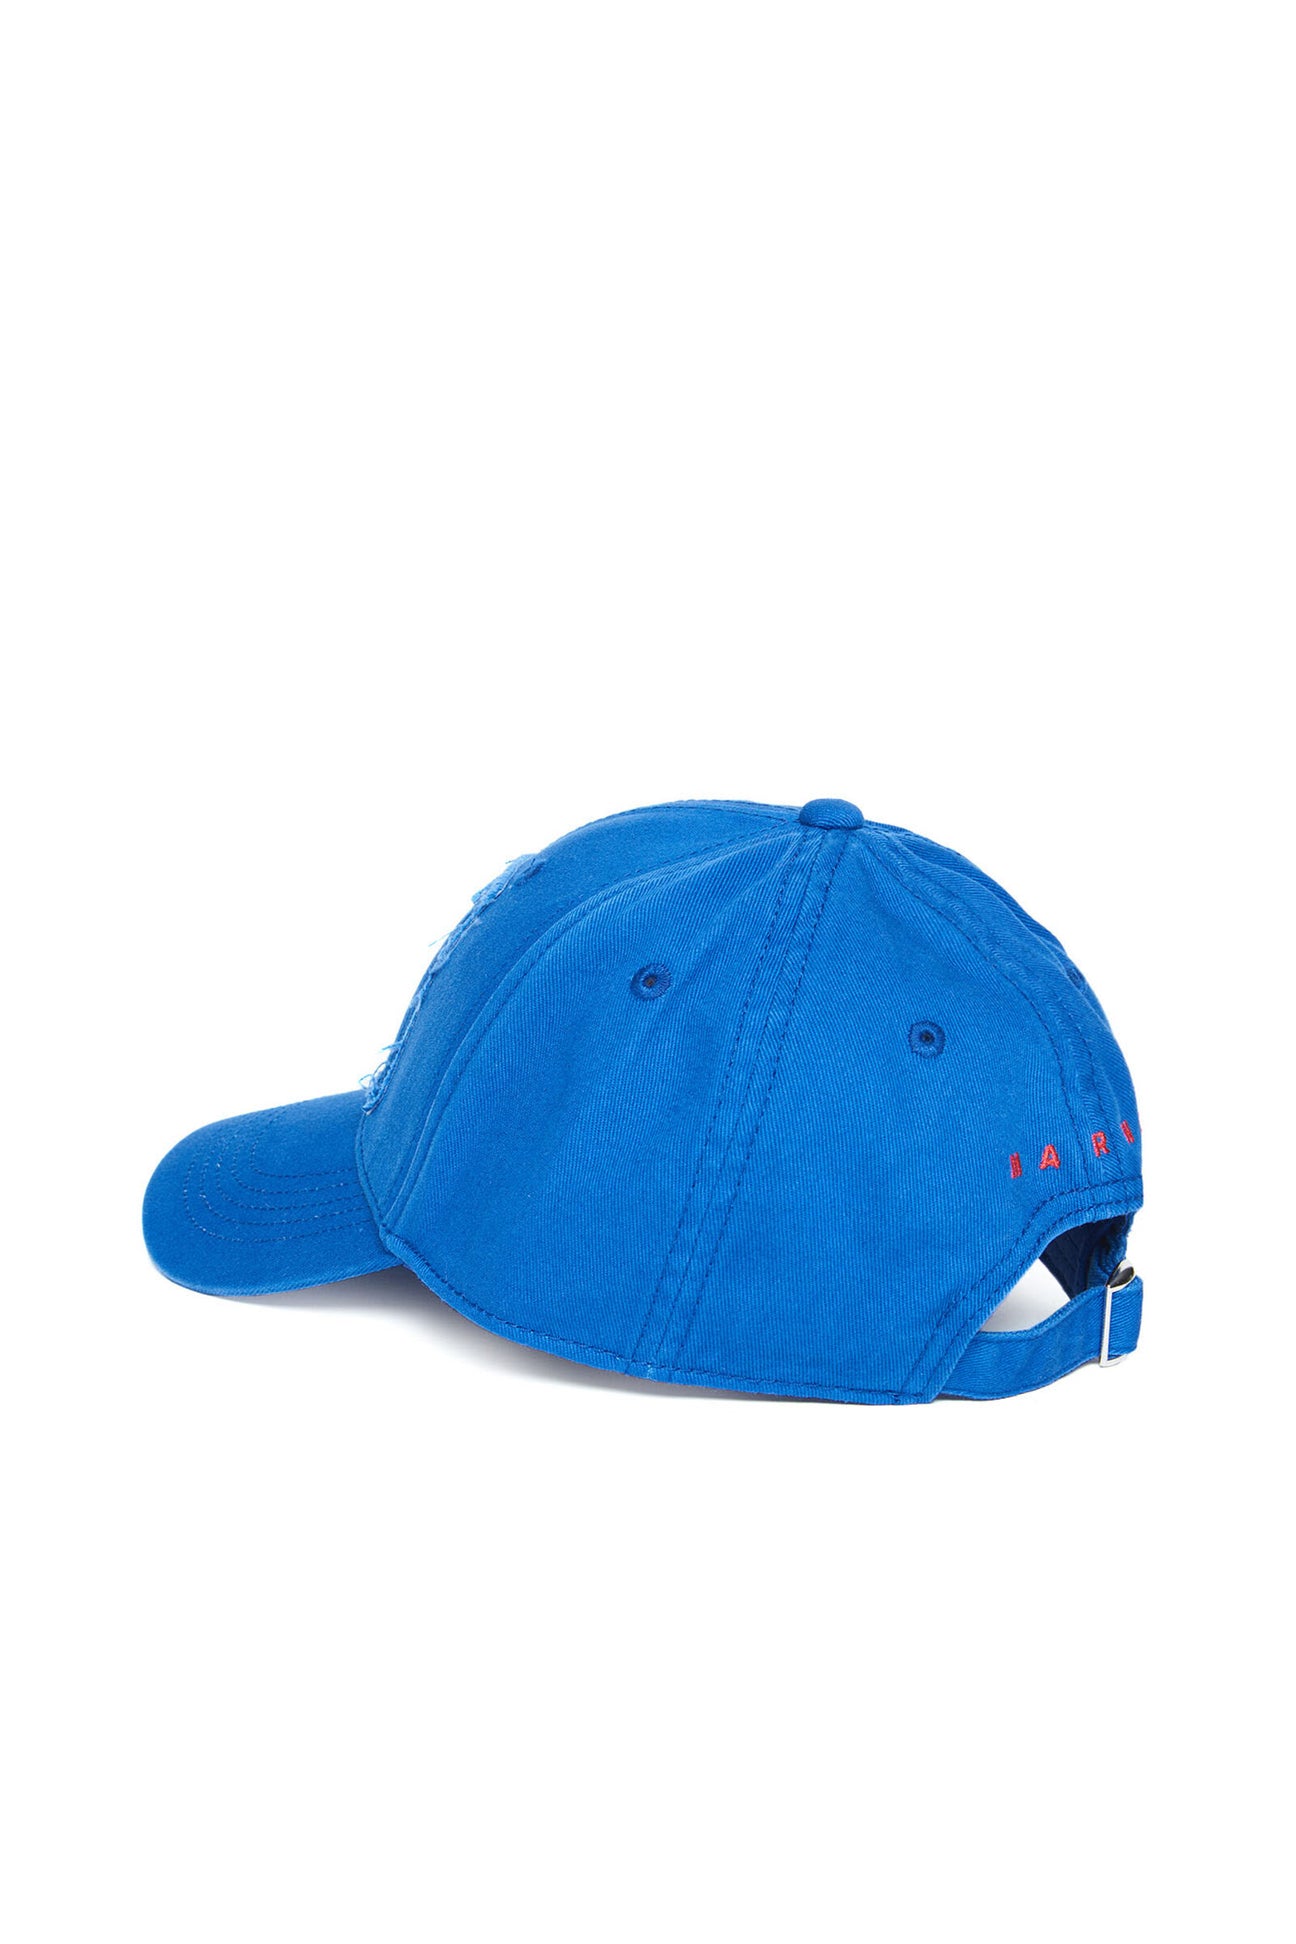 Gorra de béisbol azul oscuro con logotipo Big M Gorra de béisbol azul oscuro con logotipo Big M